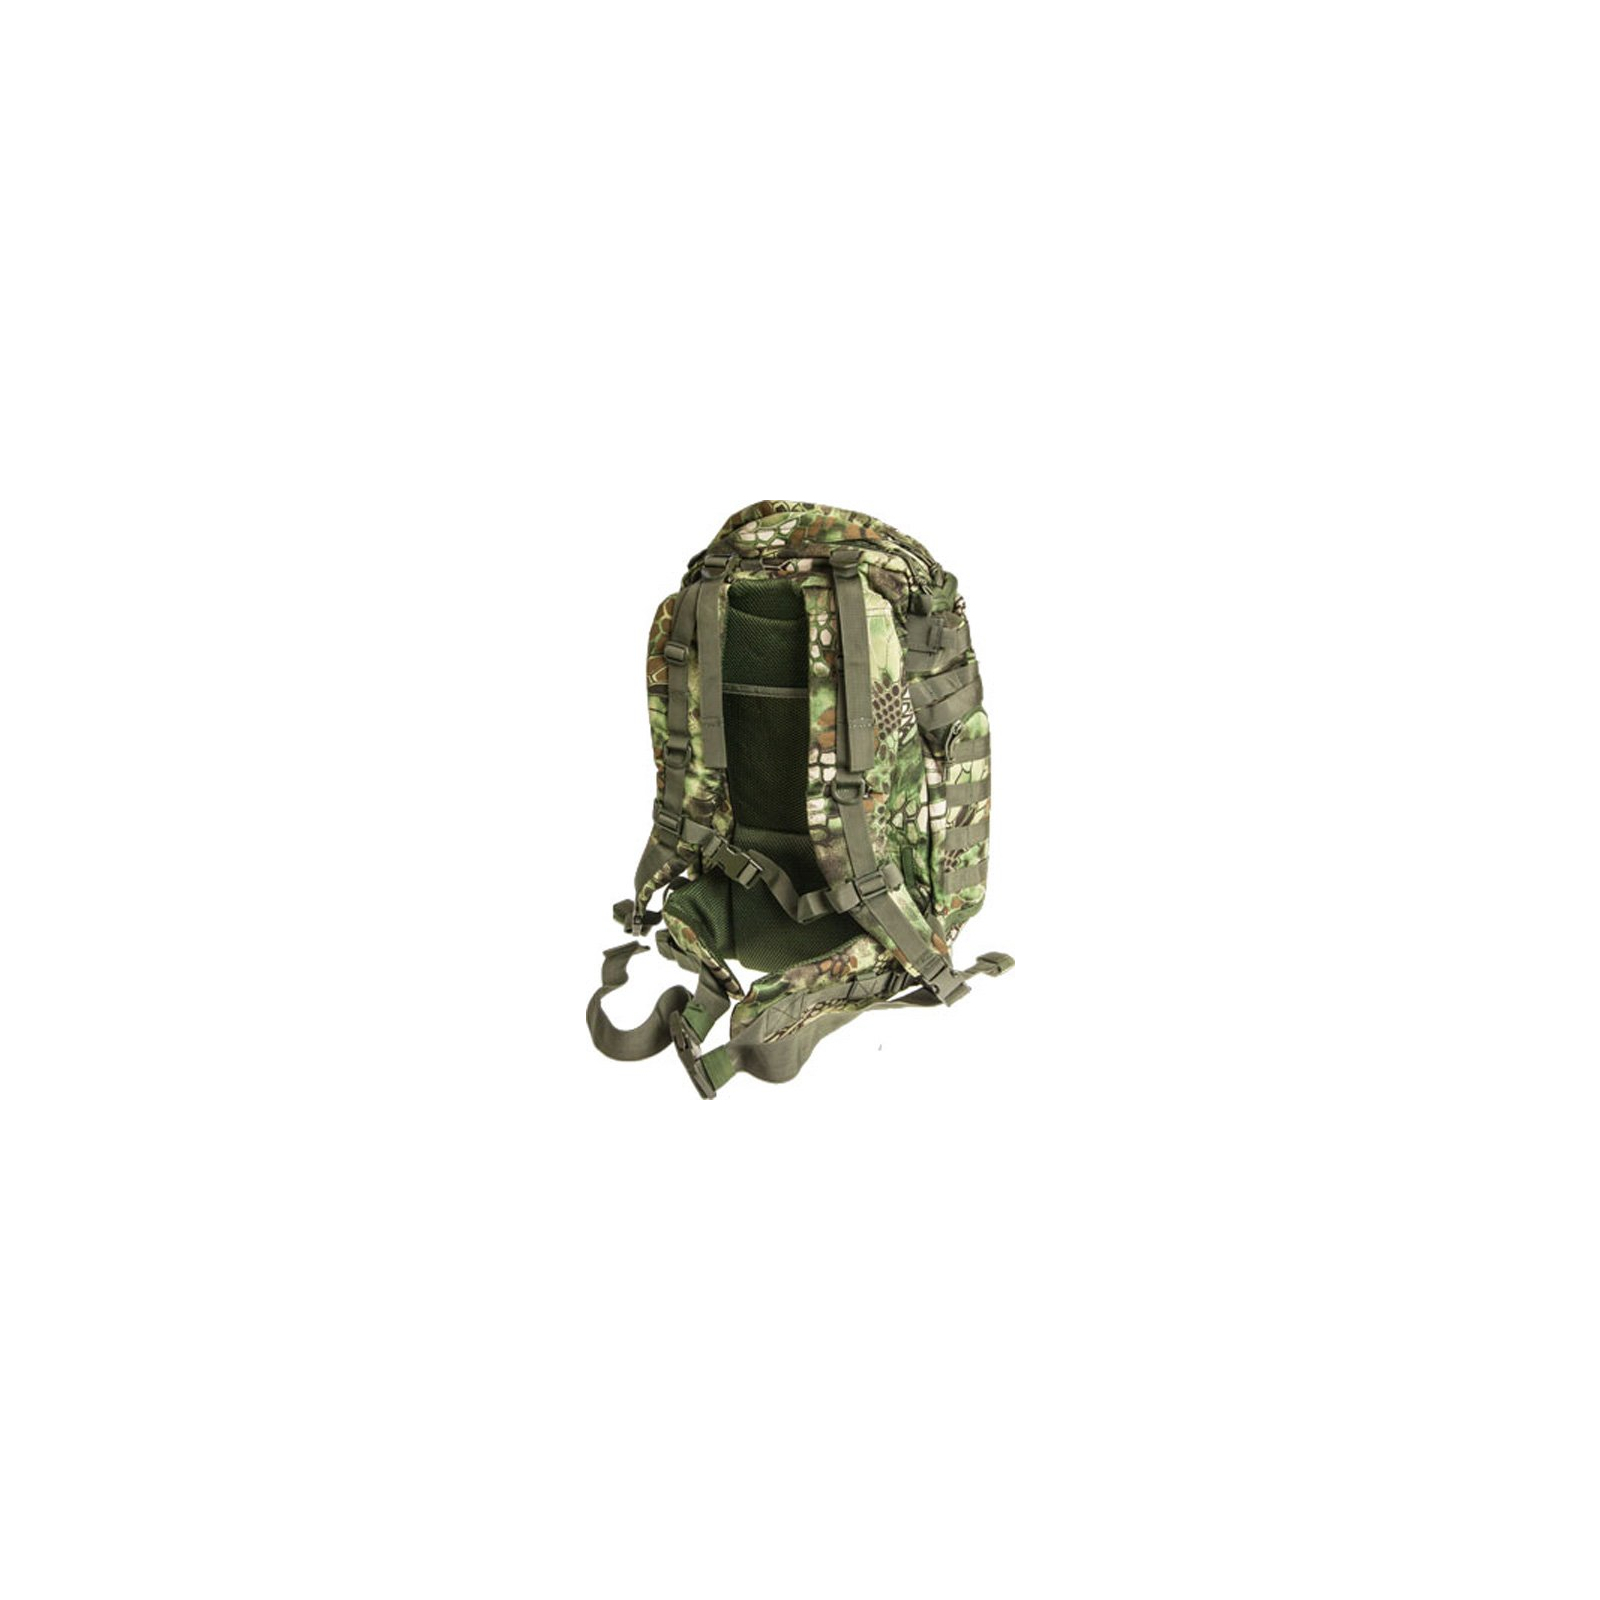 Рюкзак туристический Skif Tac тактический штурмовой 35 литров kryptek green (GB0131-KGR) изображение 2